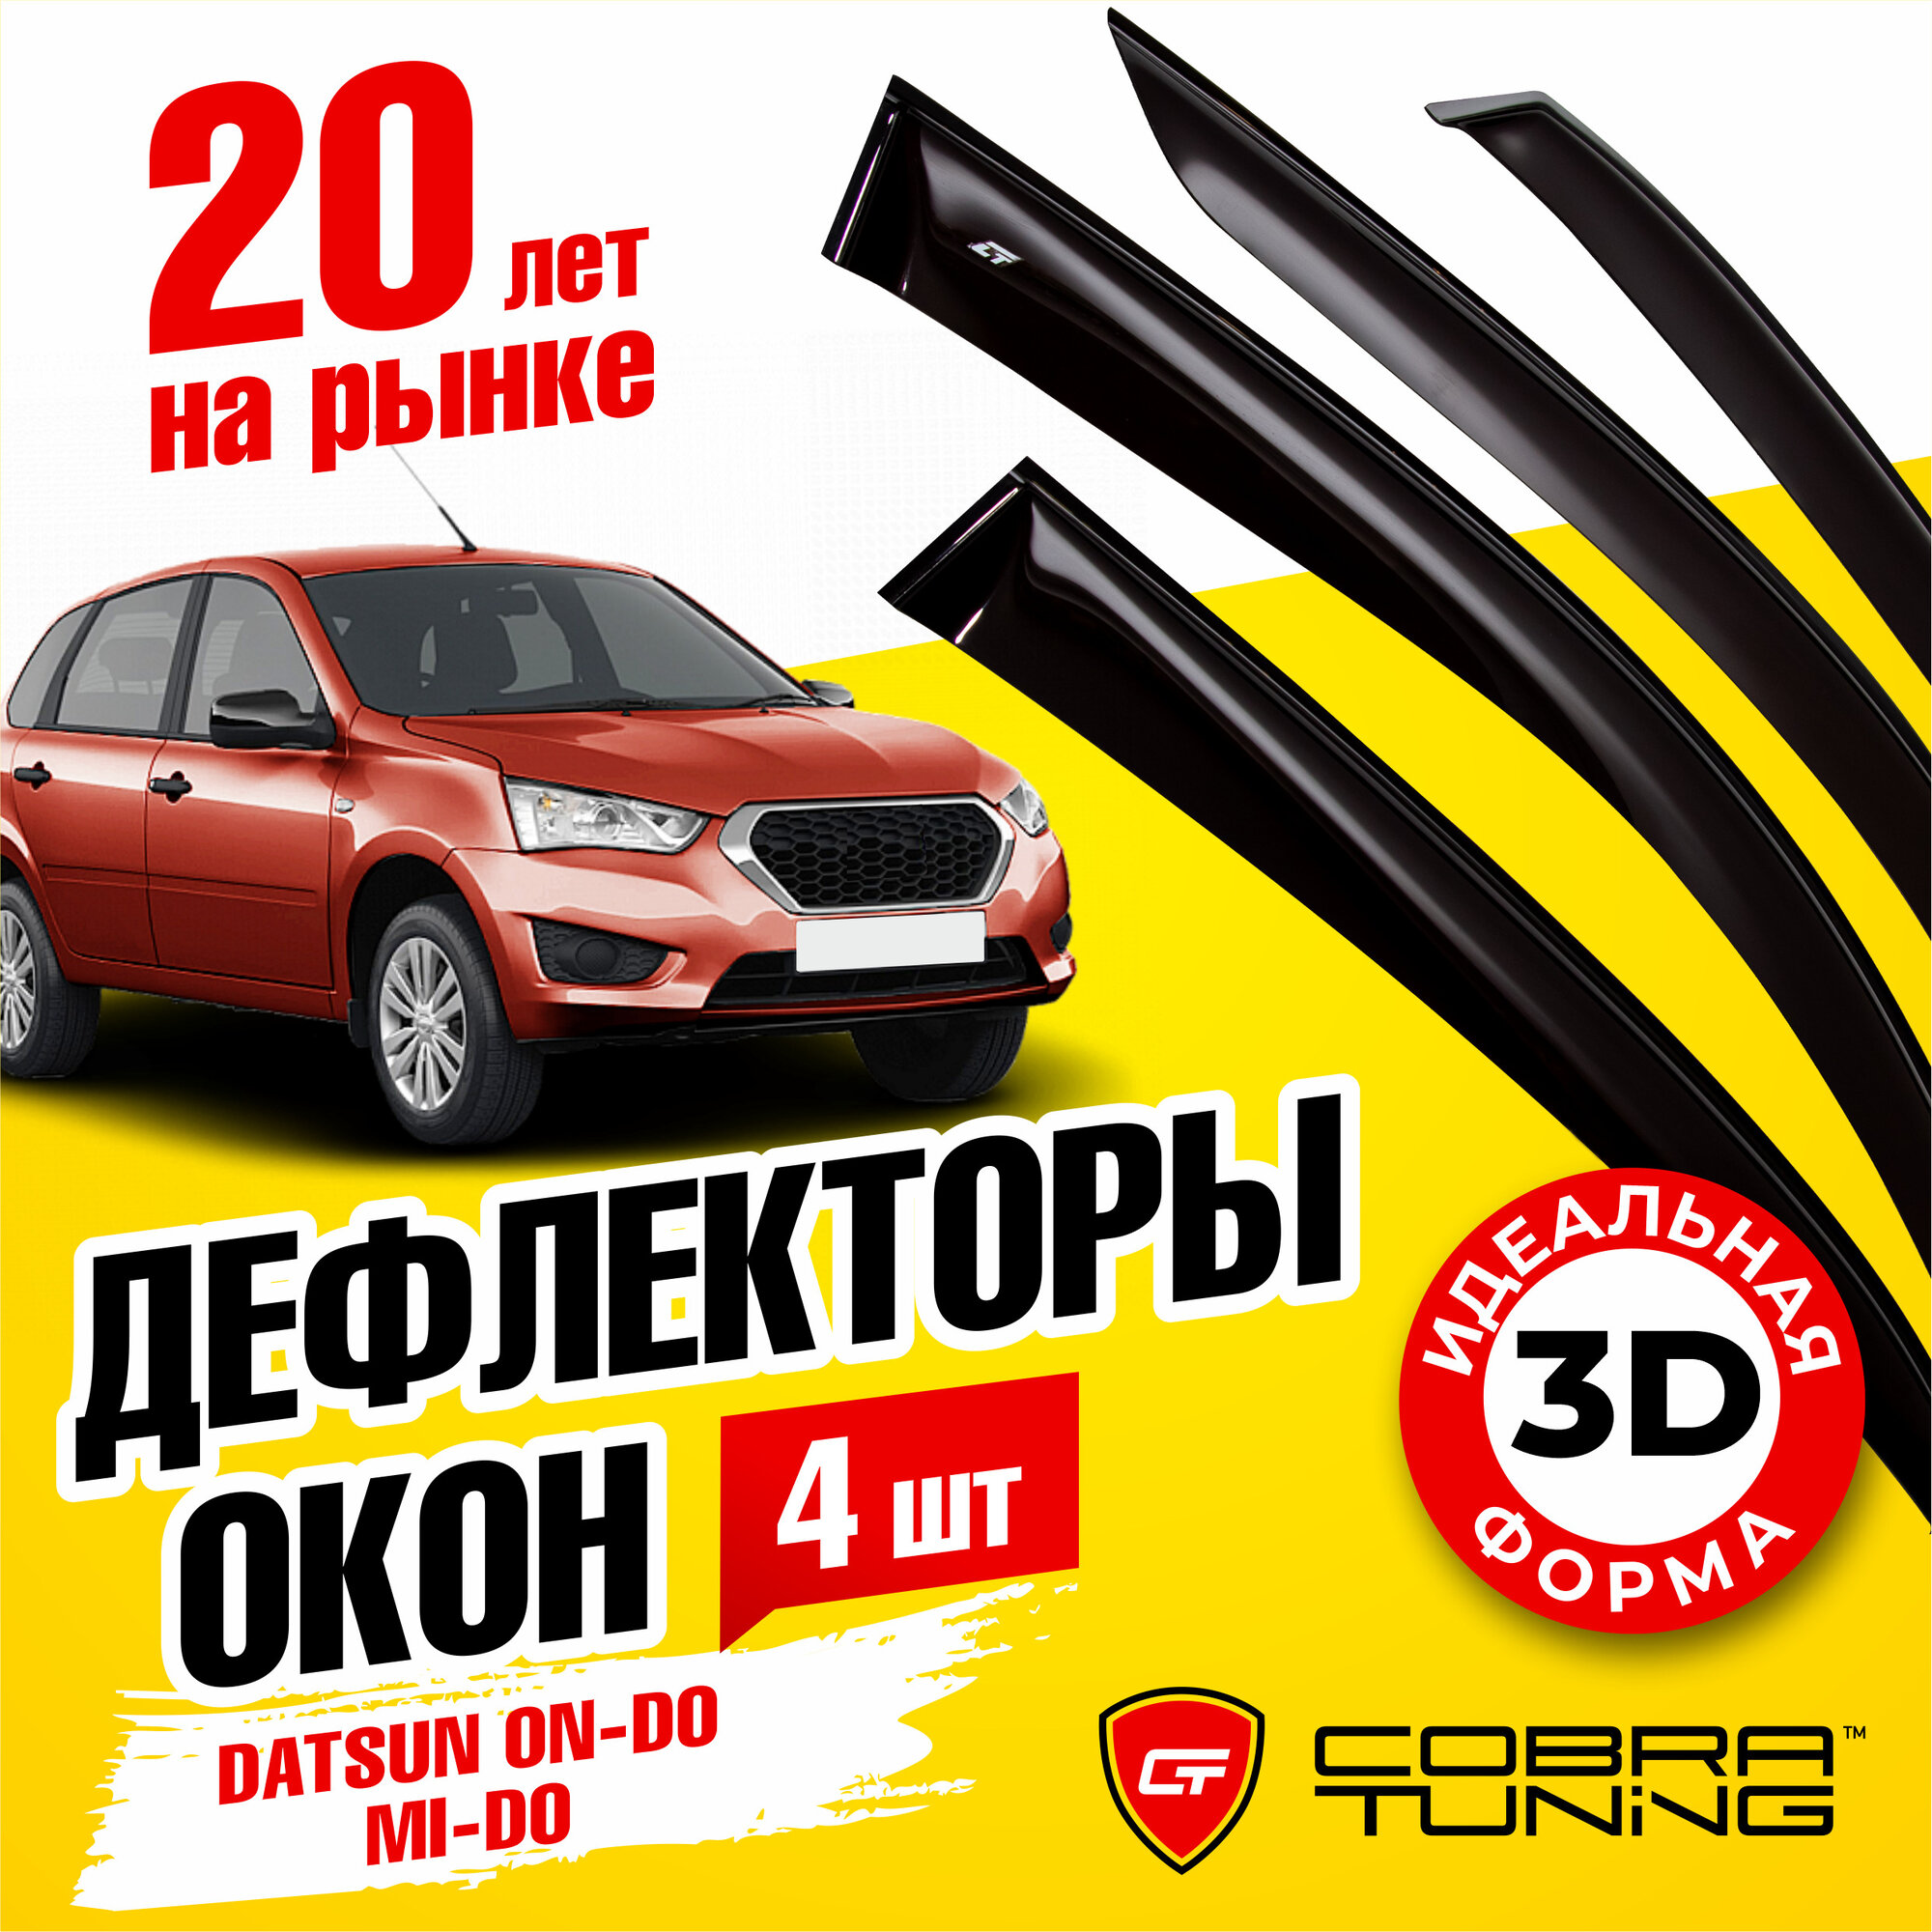 Дефлекторы боковых окон для Datsun on-DO (Датсун Он-до), mi-DO (Ми-до) 2014-2020, ветровики на двери автомобиля, Cobra Tuning